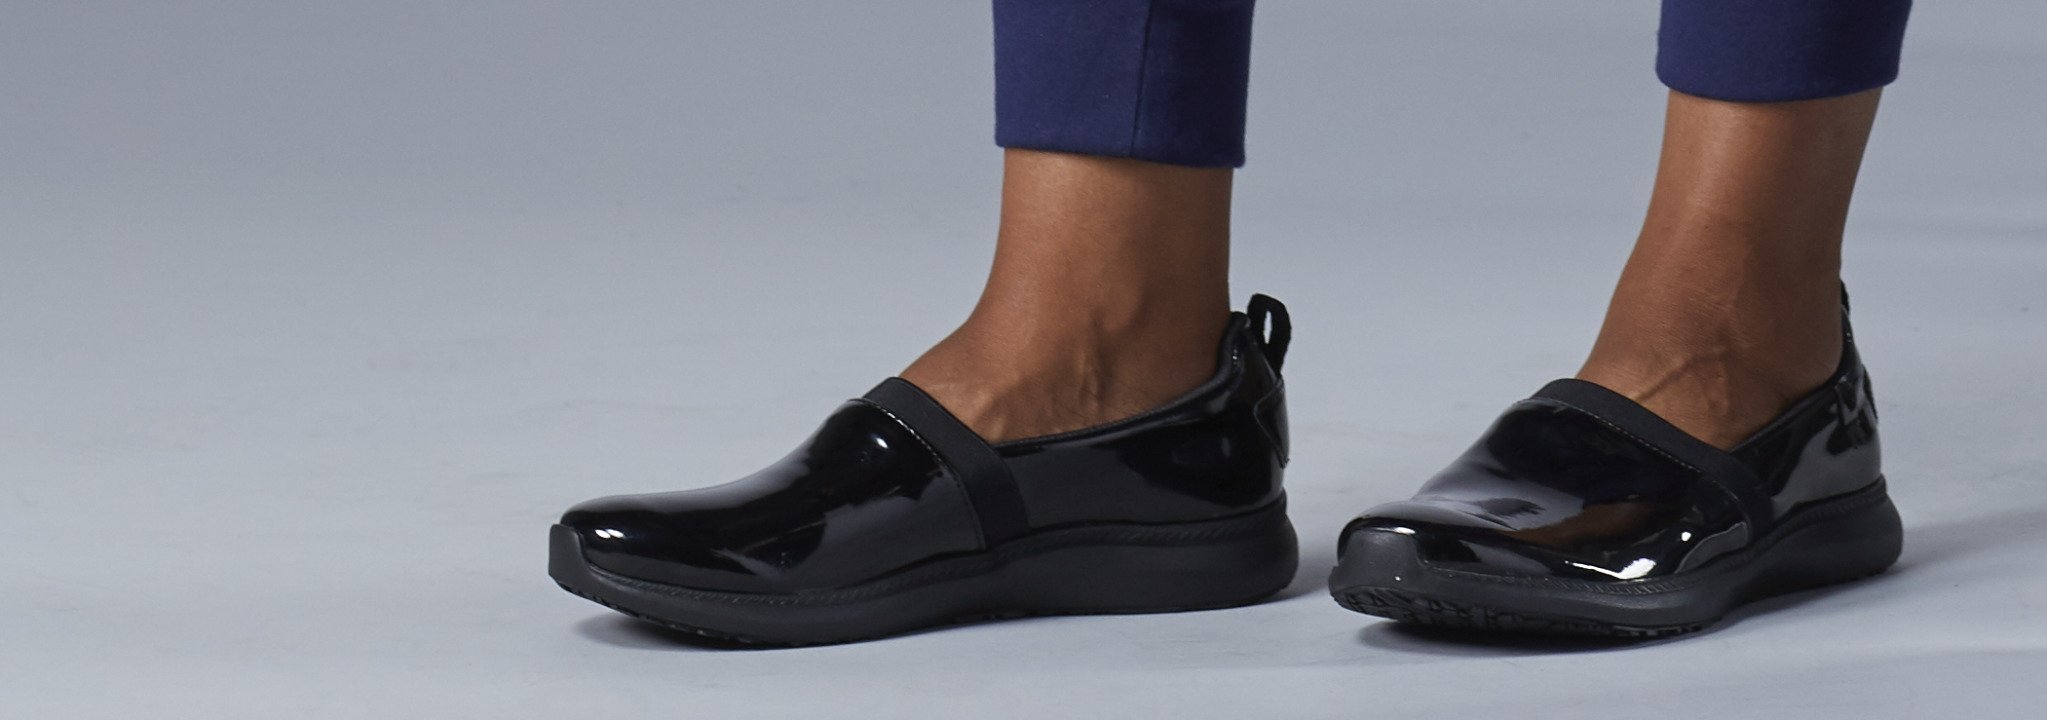 women slip resistant shoes